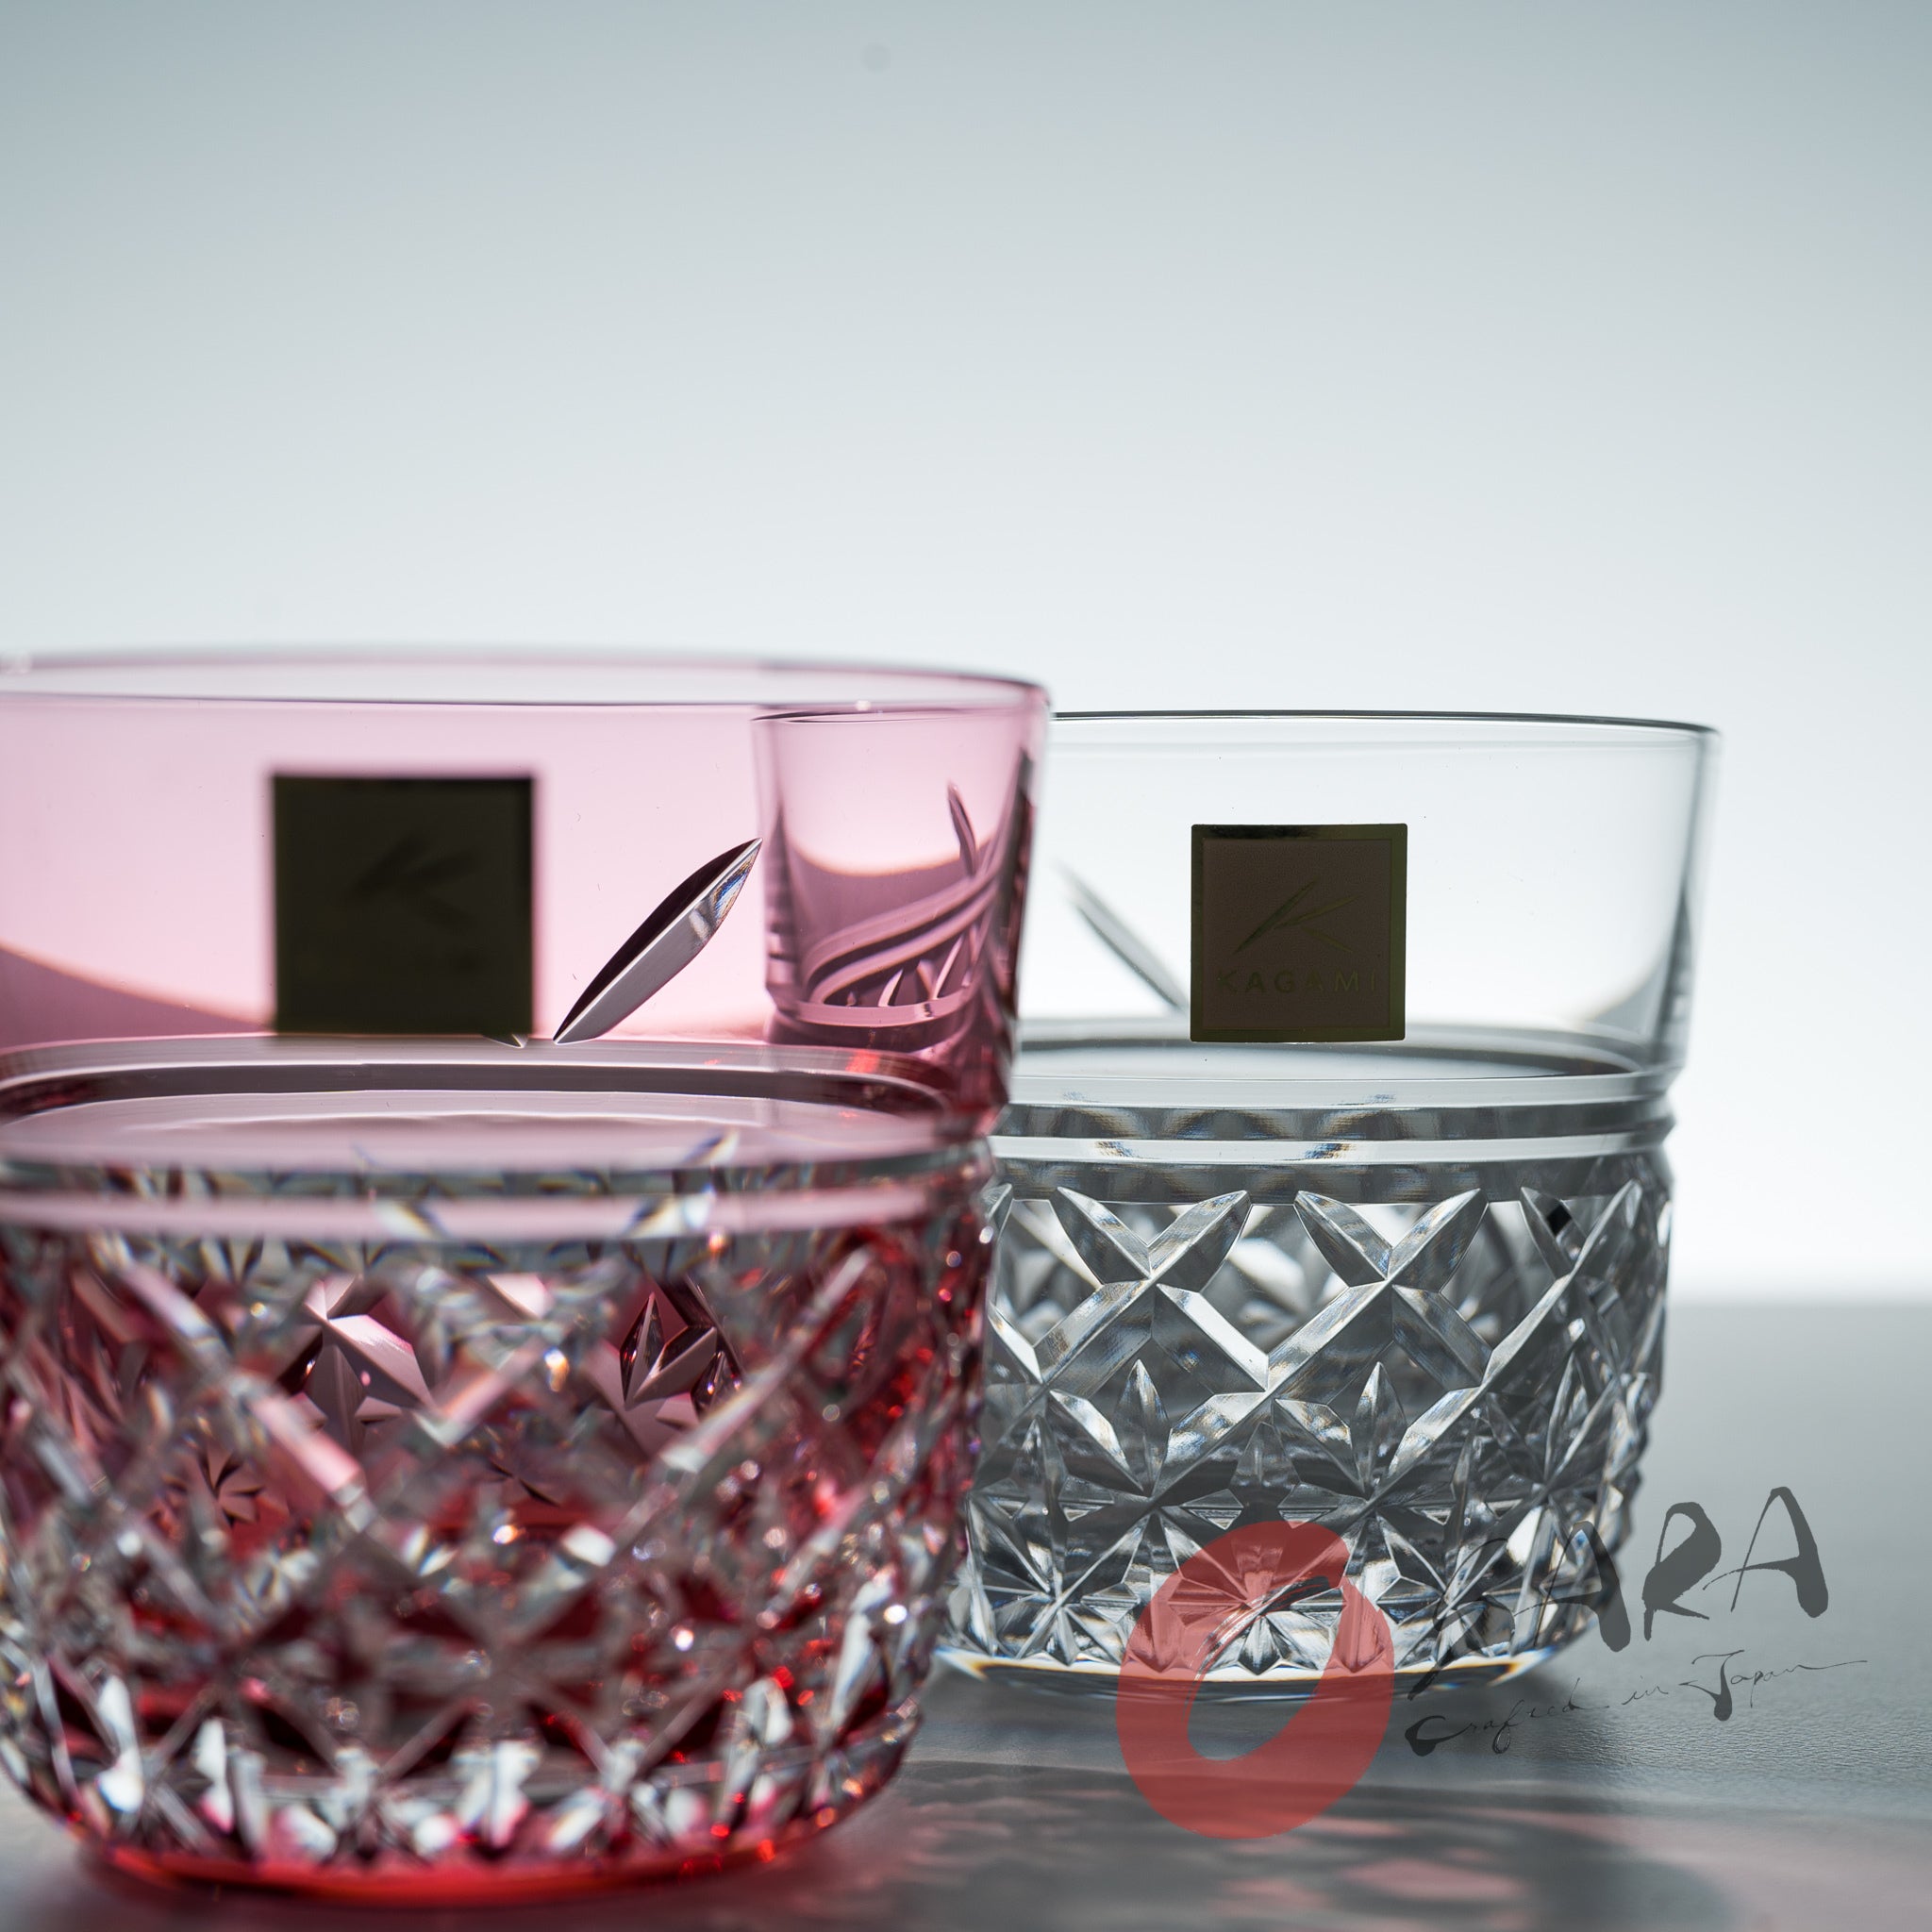 KAGAMI Crystal Edo-Kiriko Pair Sake Glass - 120 ml / Yui